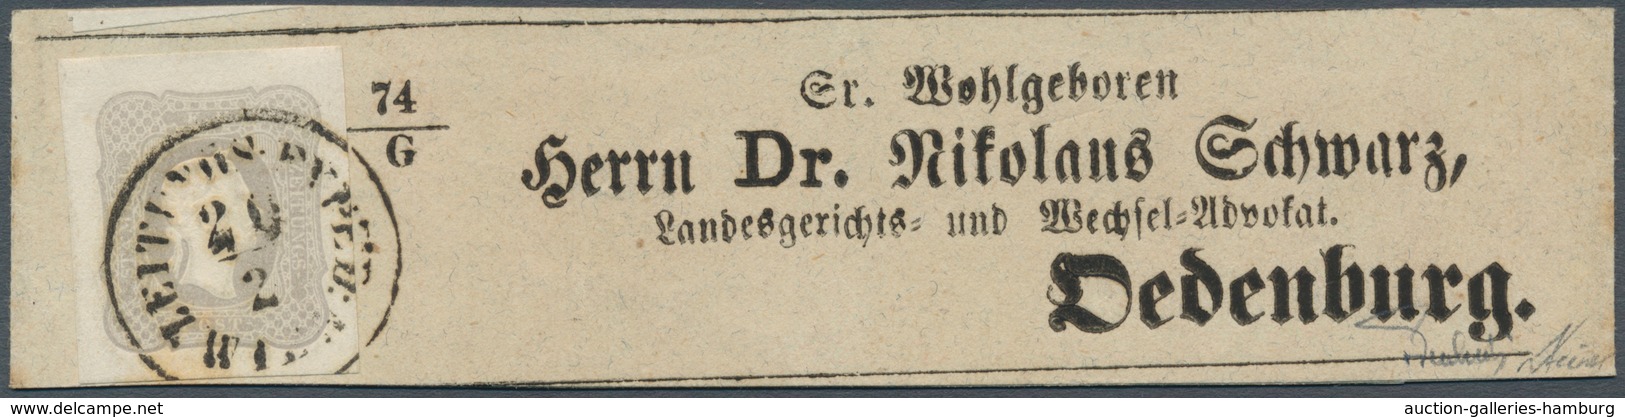 Österreich: 1861, (1,05 Kreuzer) Hellgrauviolett Zeitungsmarke, Allseits Breit- Bis überrandig, Entw - Ungebraucht